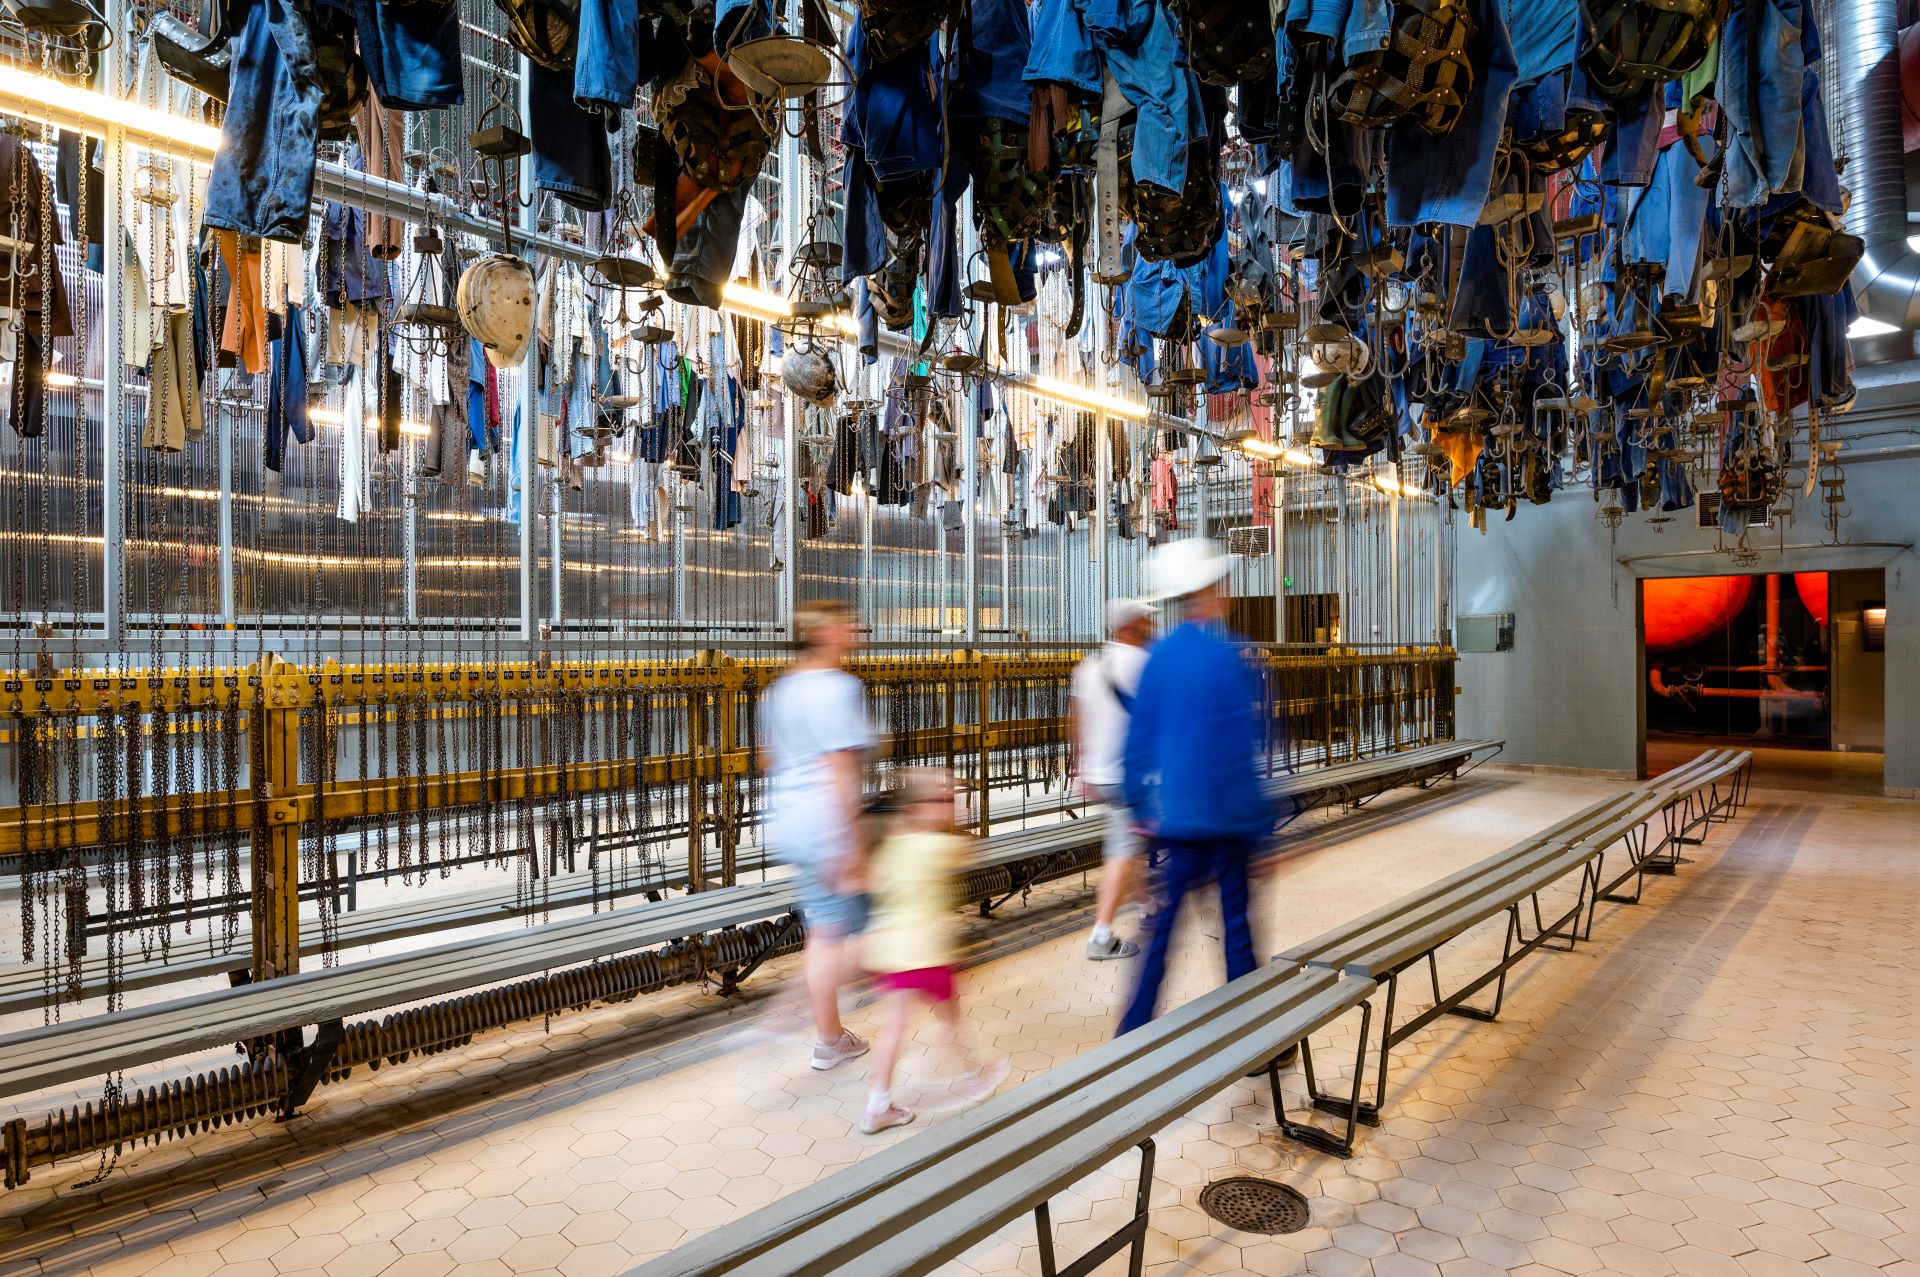 La famille et le guide touristique traversent une pièce de l'ancienne mine où des vêtements de mineurs sont suspendus au plafond comme pièces à conviction.